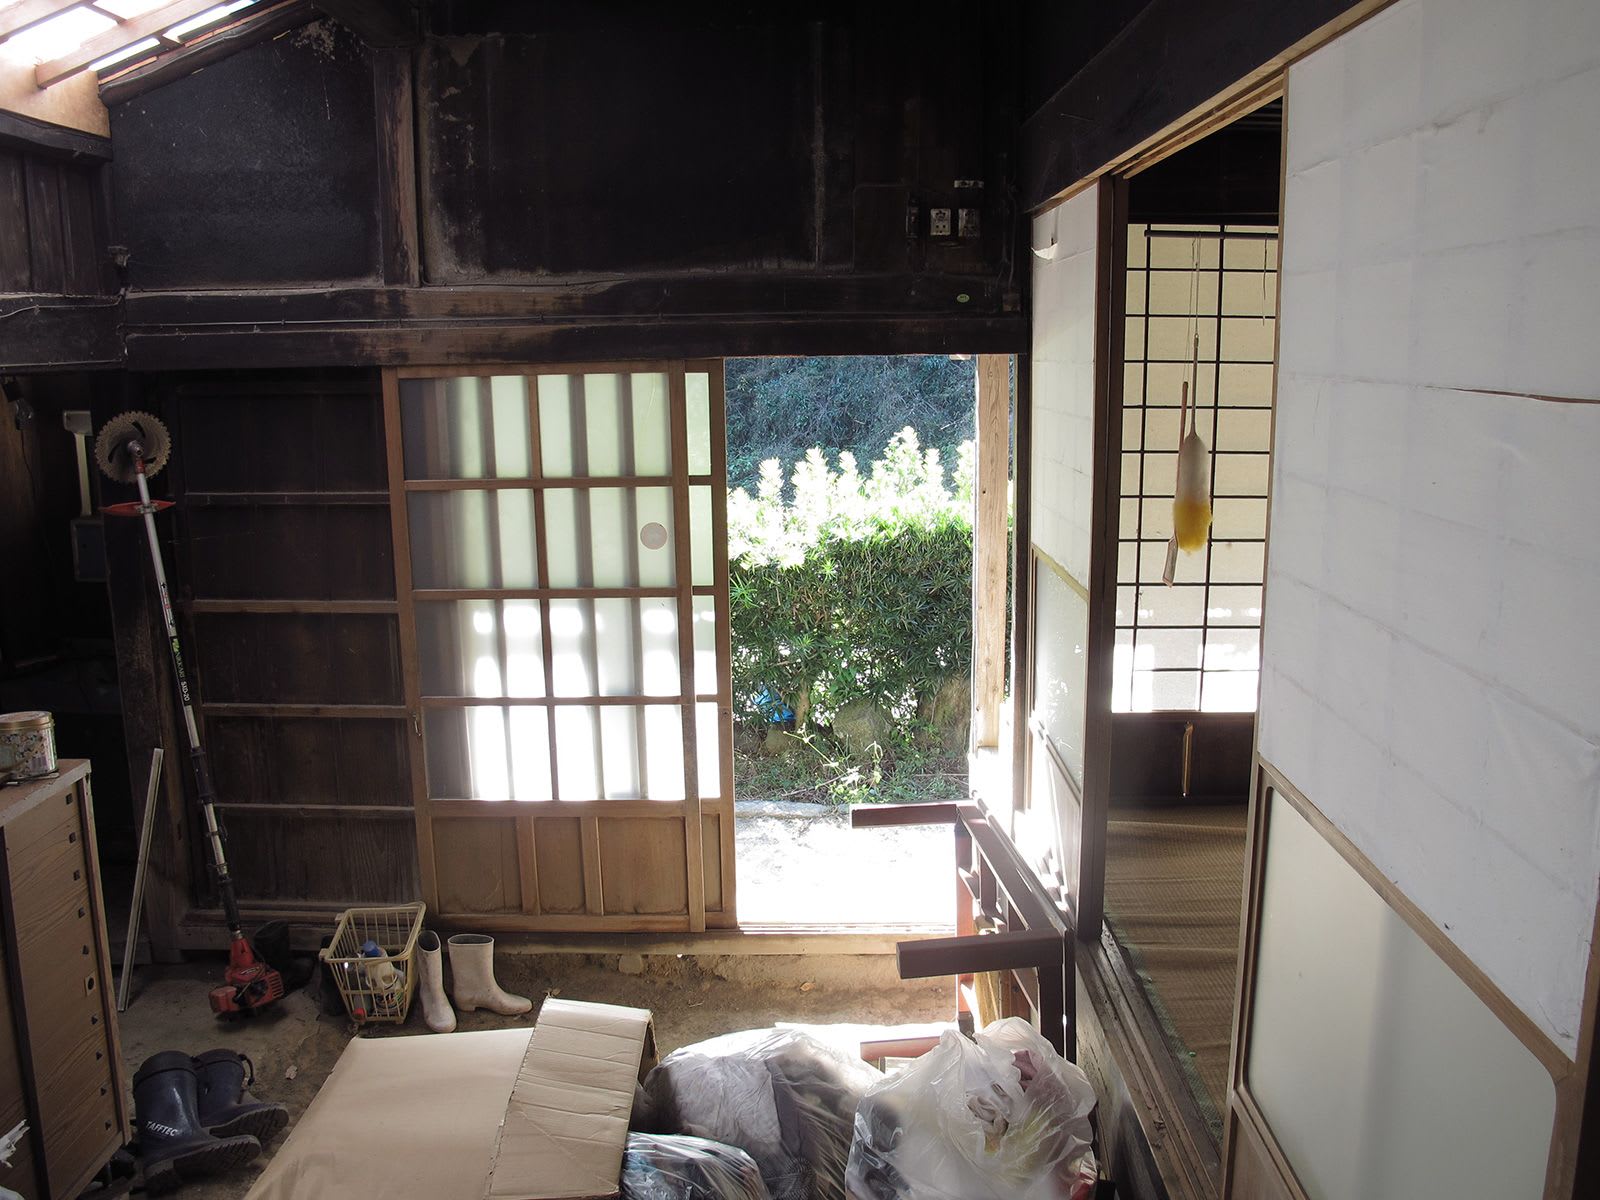 ثنائي يحول منزل "أشباح" ياباني إلى مضيفة